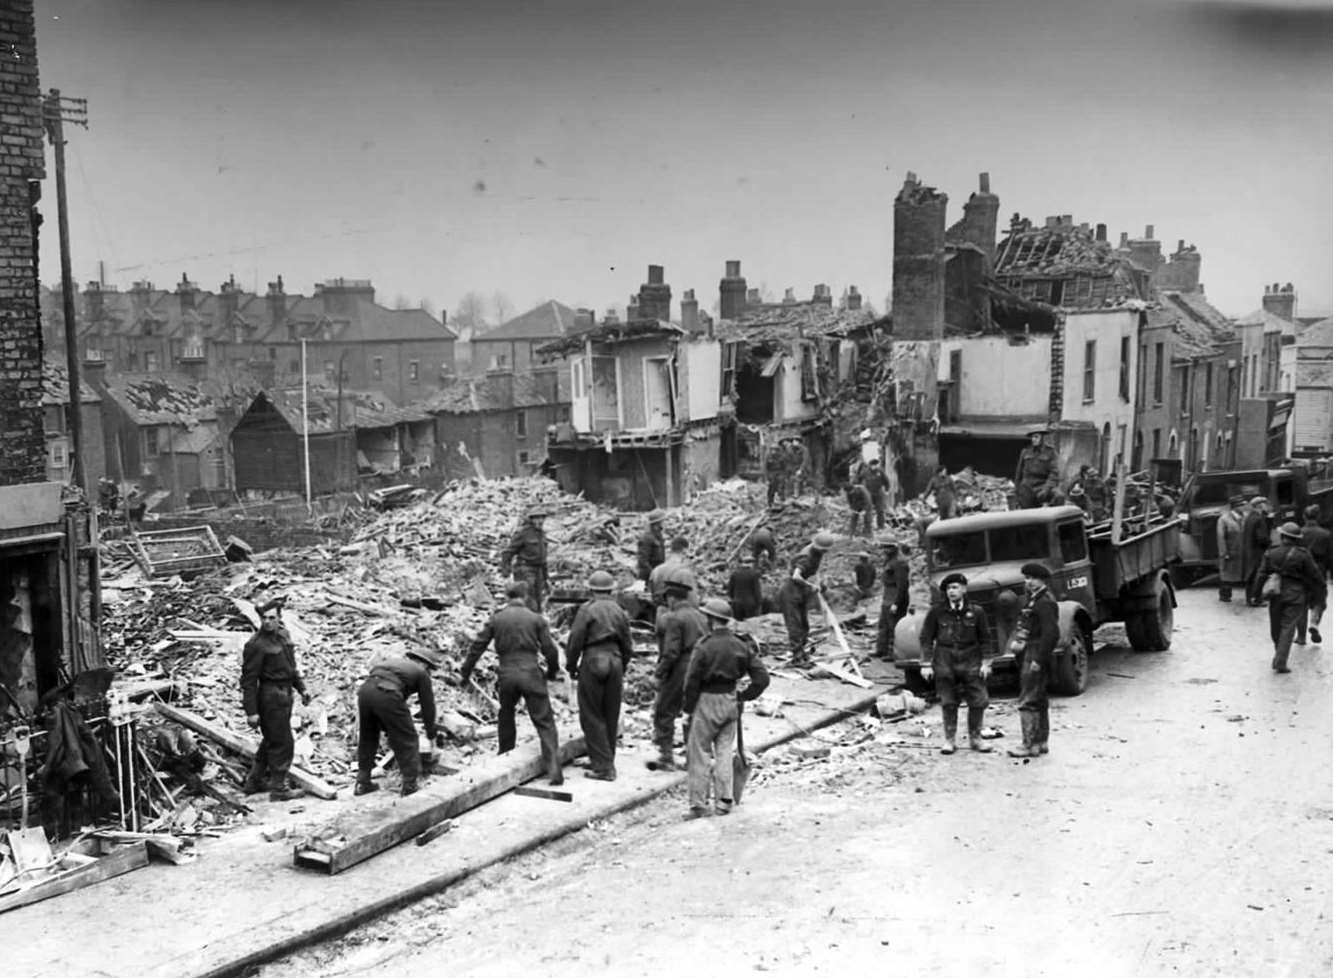 The scene of devastation in Ordnance Street, Chatham, December, 1940